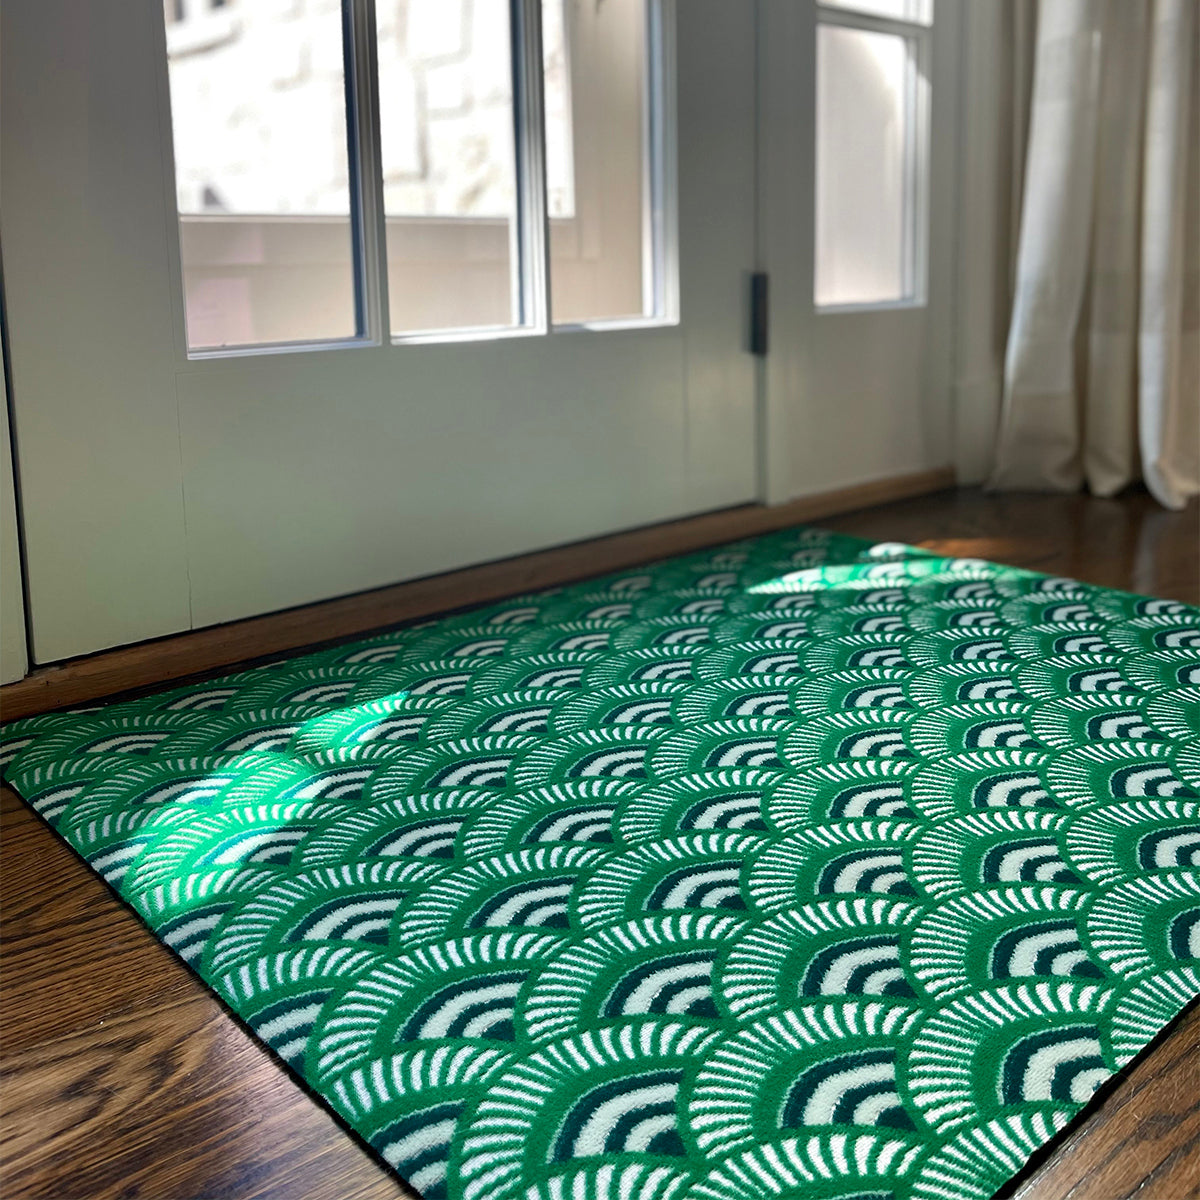 AttractionDesignHome Doormat; Green